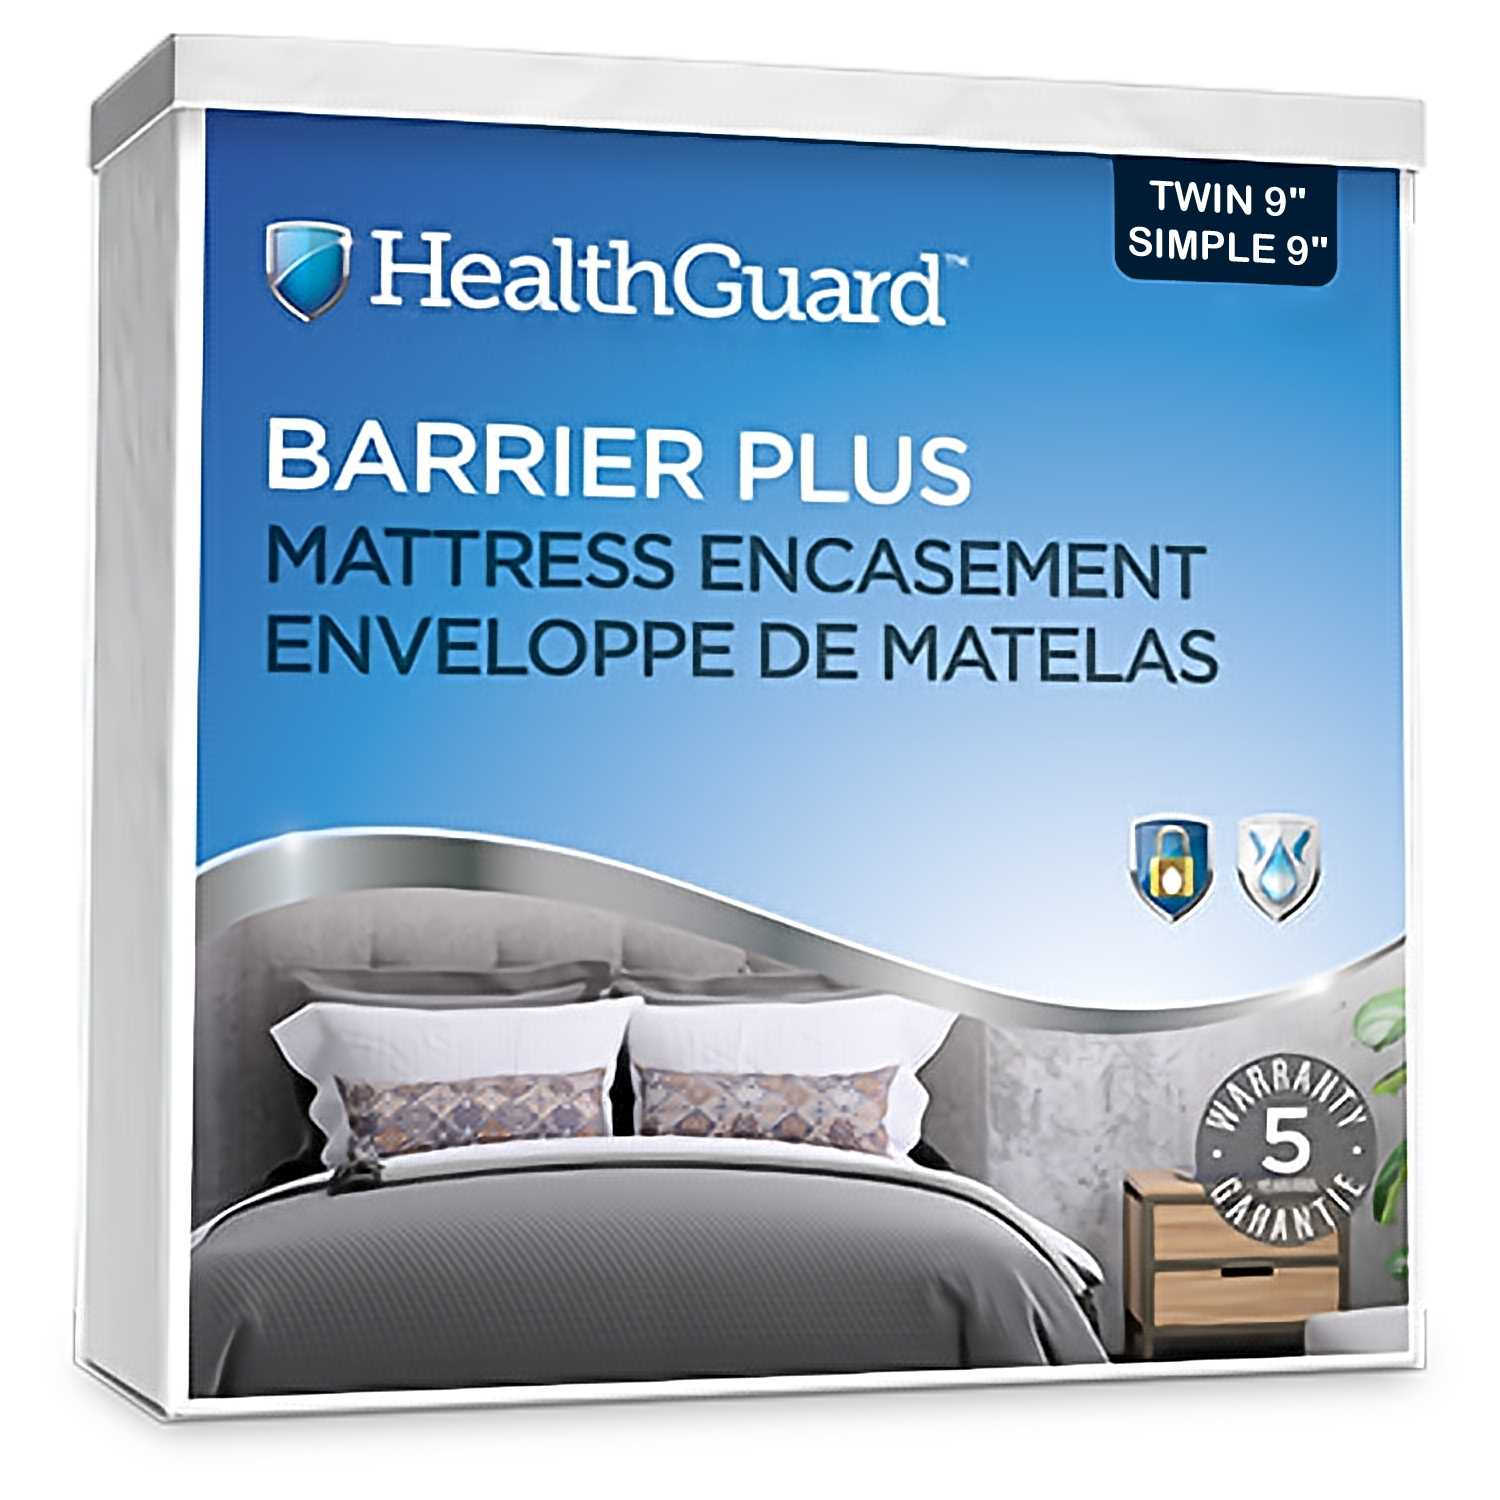 Health Guard Barrier Plus Mattress Encasement Single / Twin